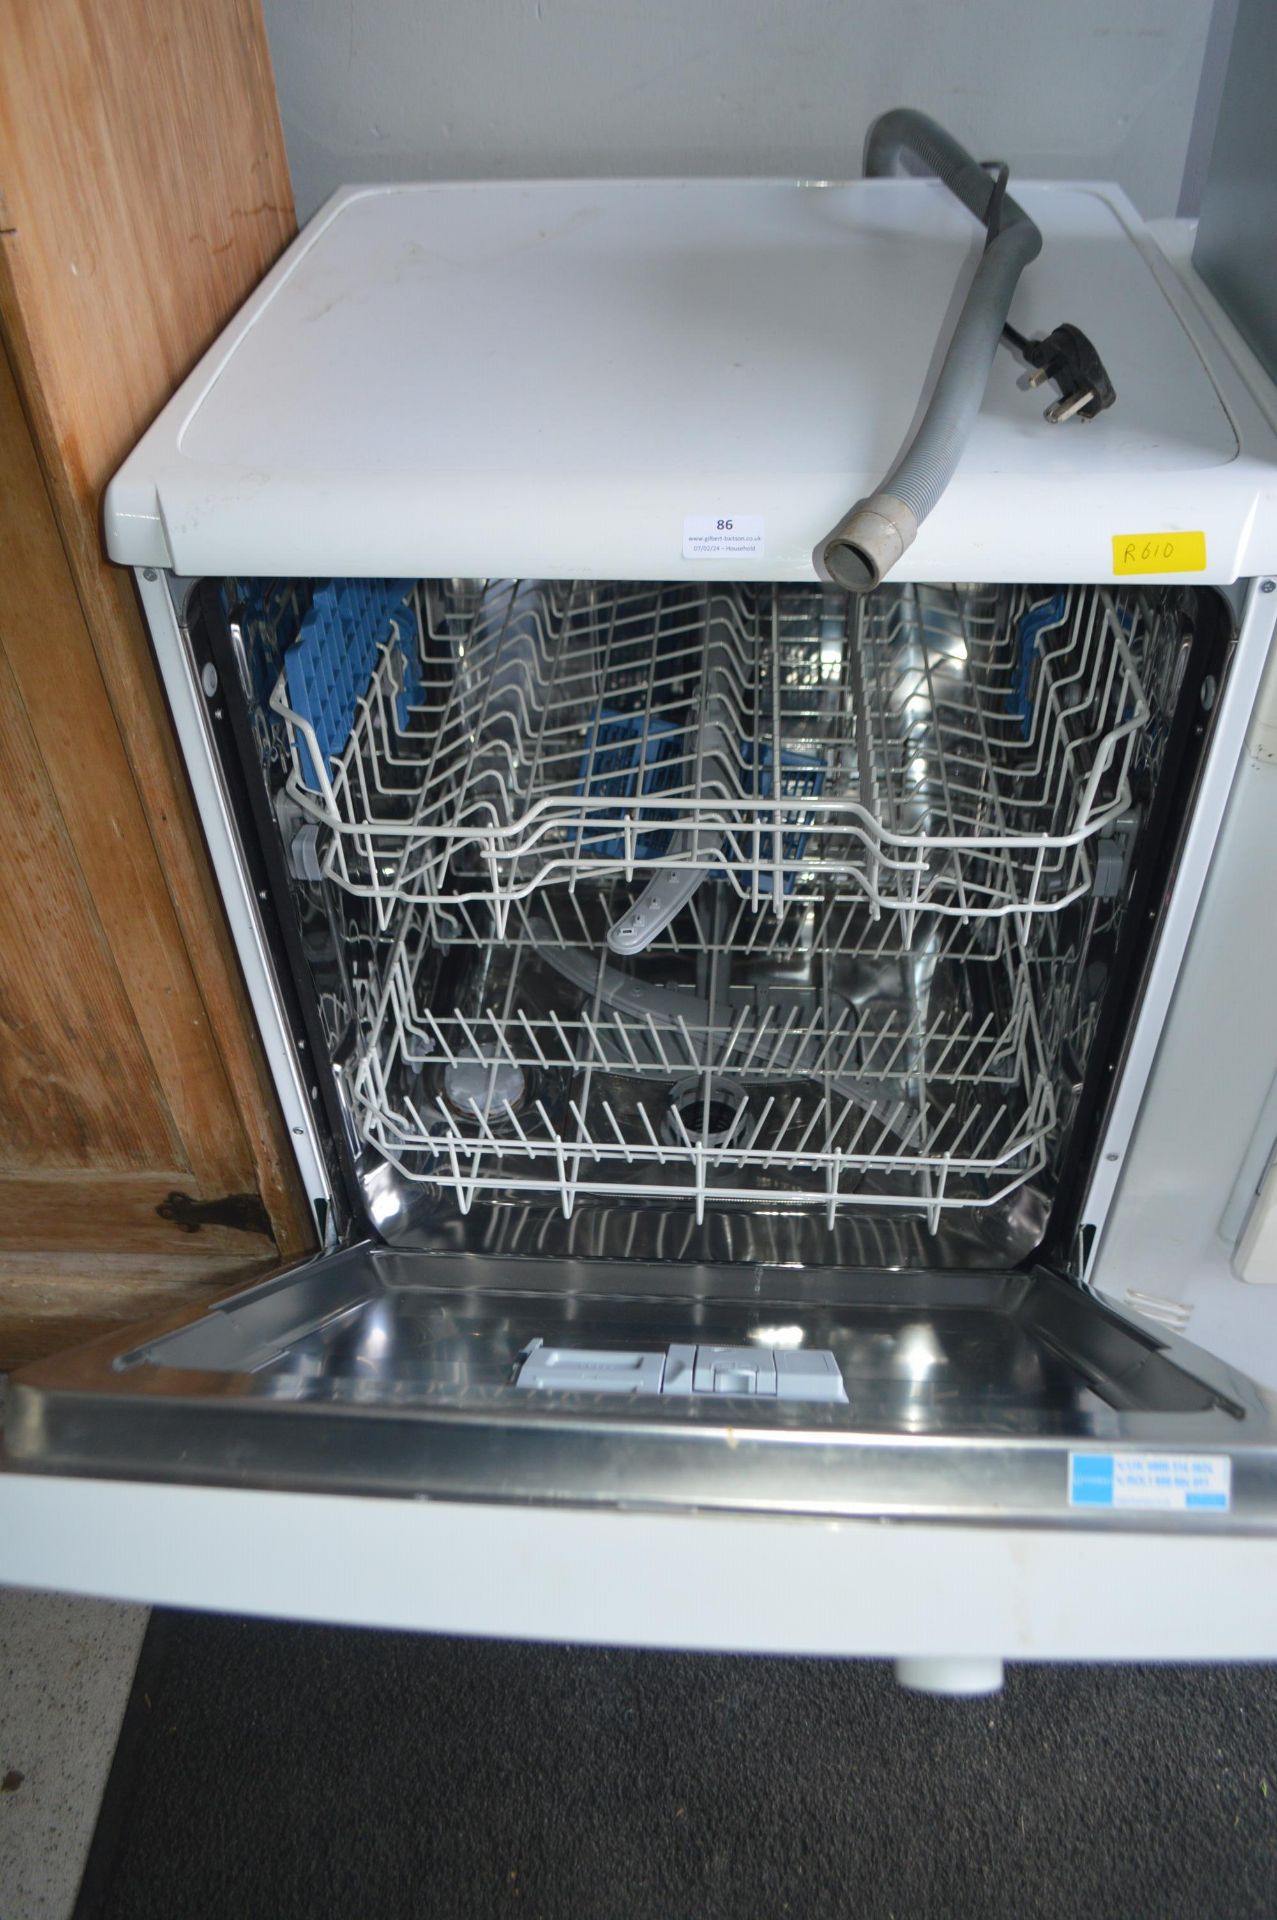 Indesit Dishwasher - Image 2 of 2